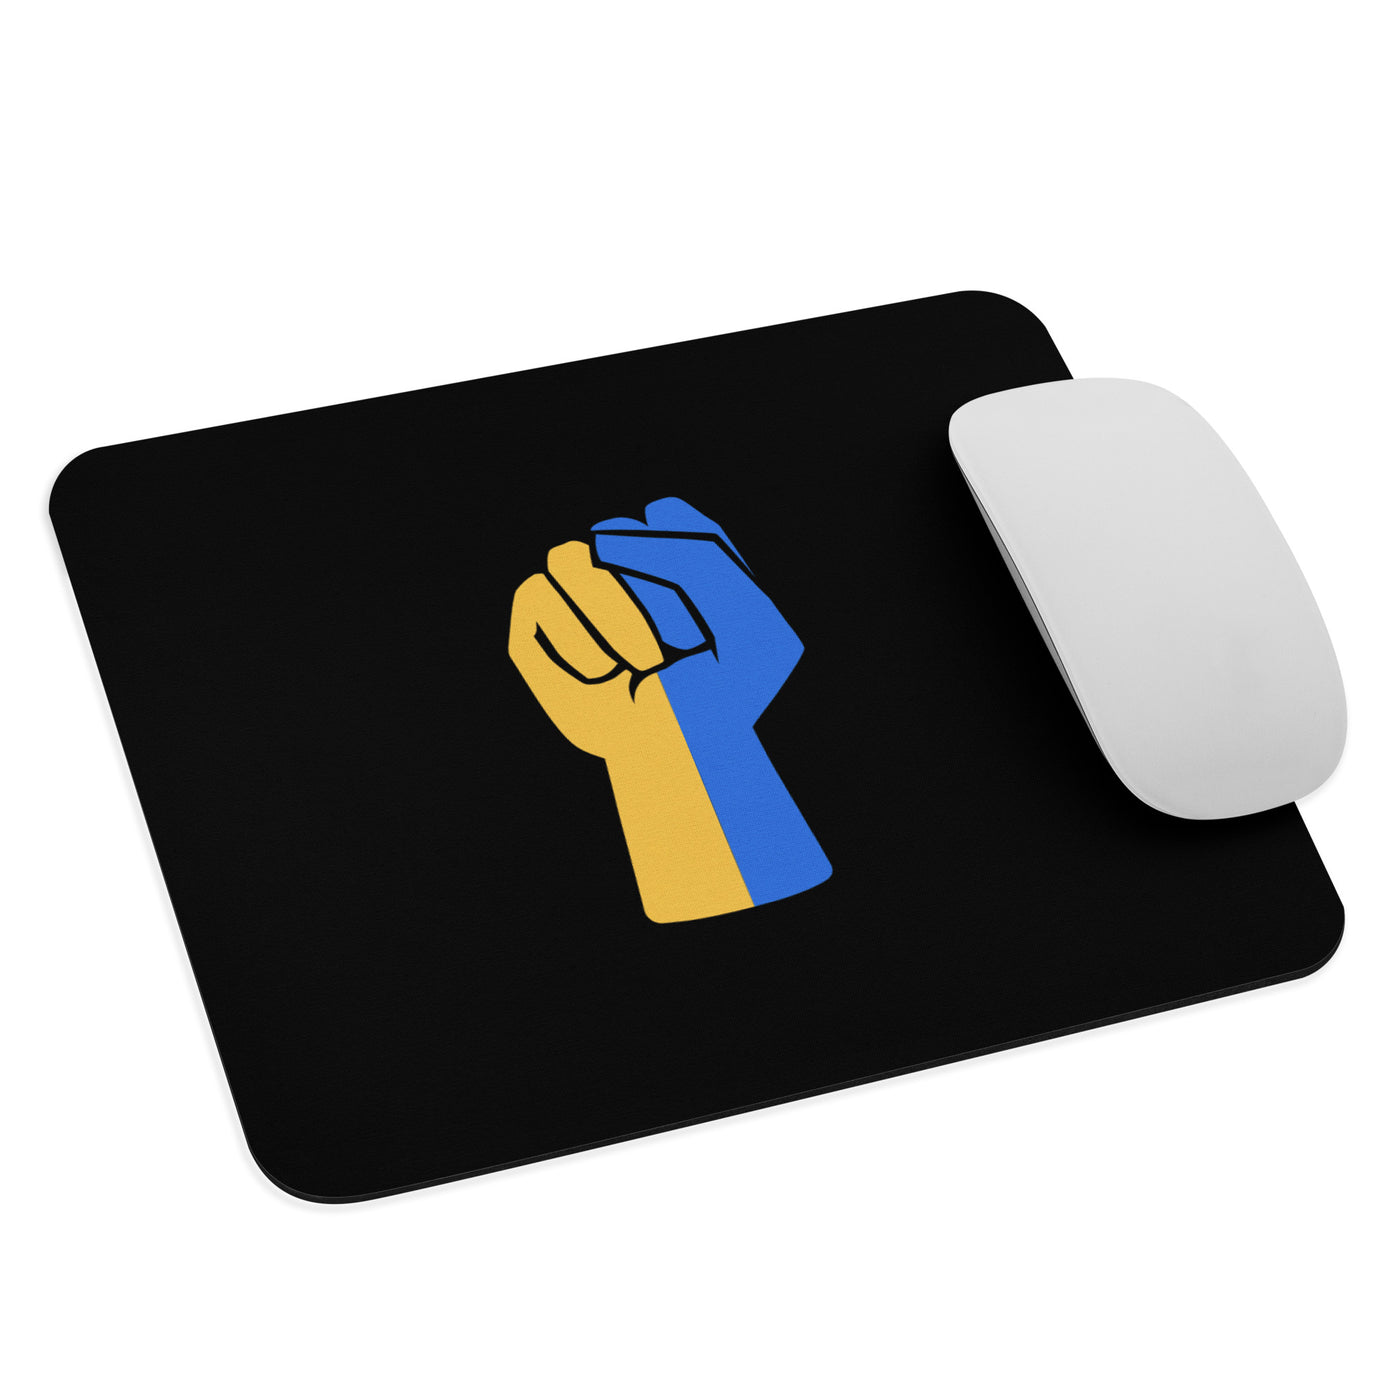 Erhebe deine Faust für die Ukraine Mauspad